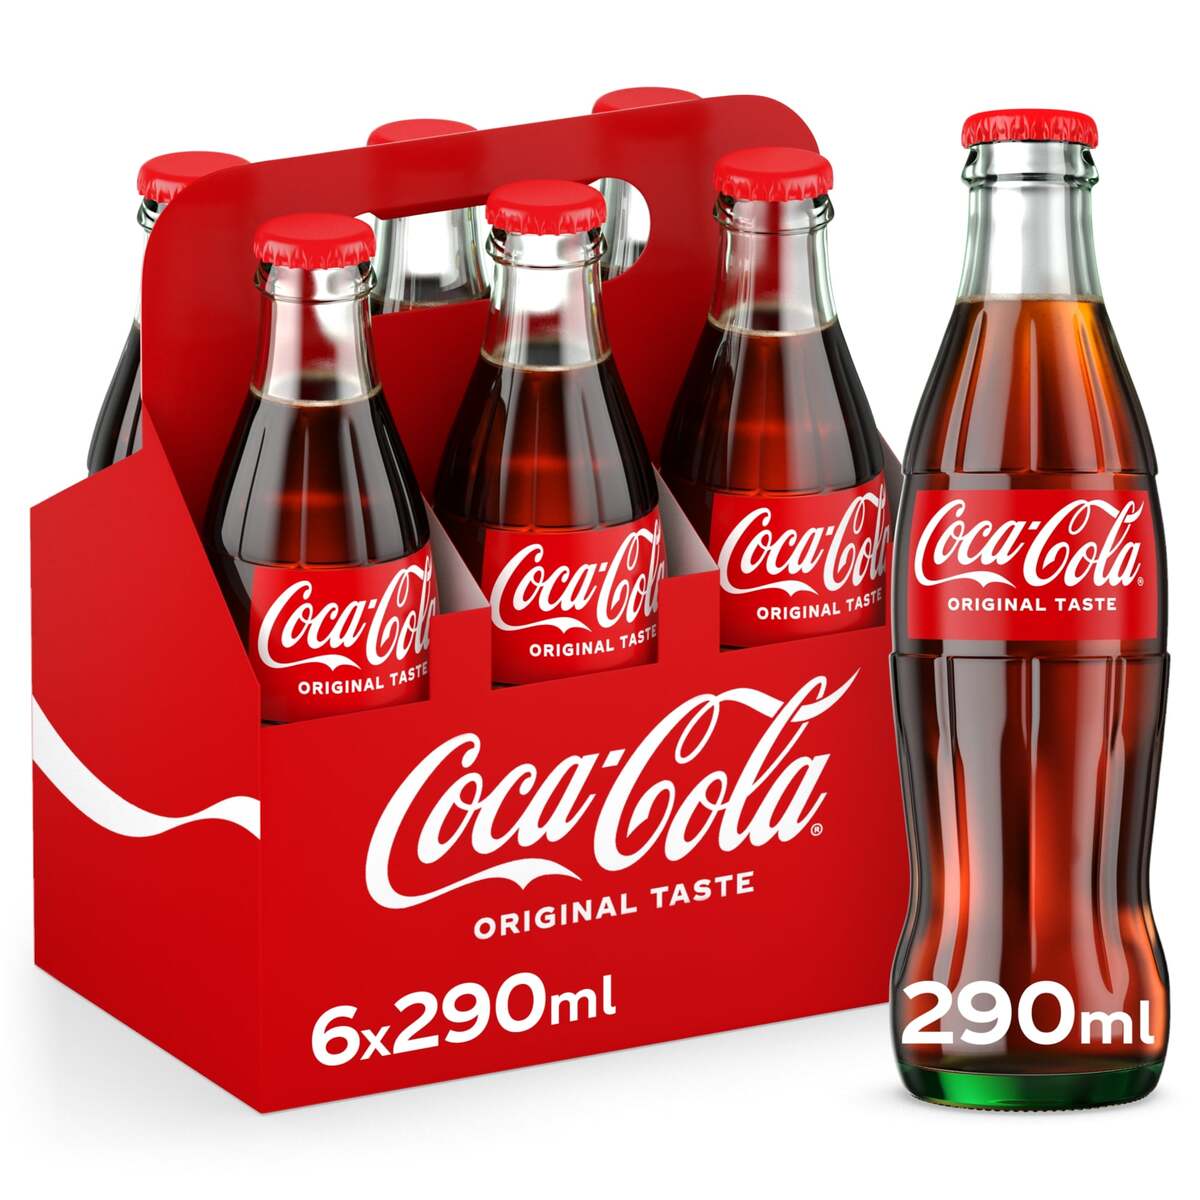 كوكا كولا عادي 290 مل